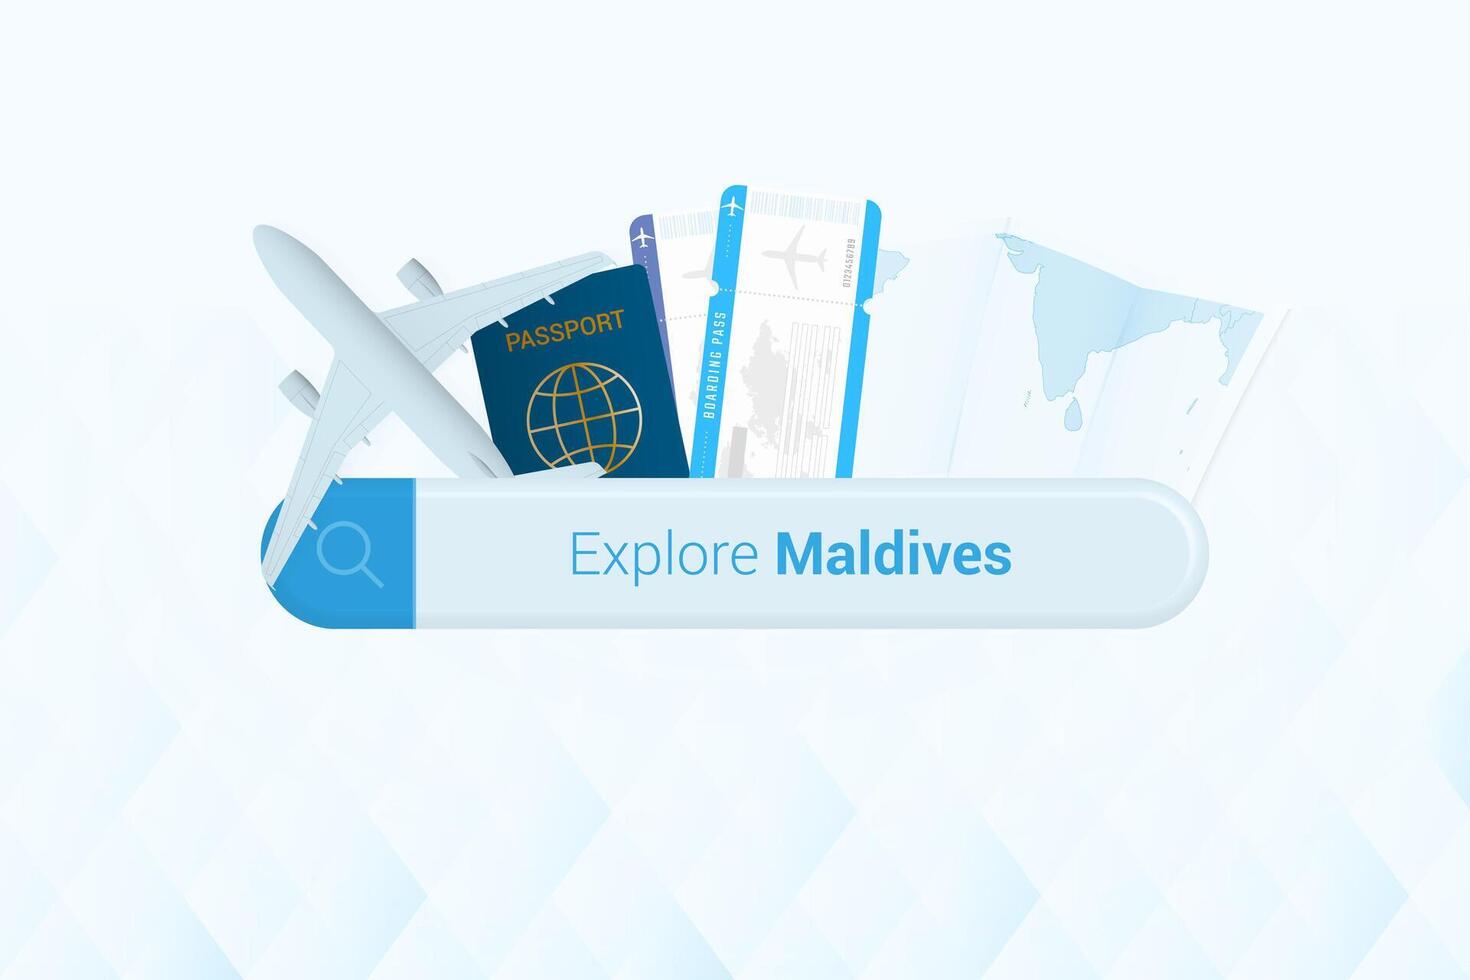 recherche des billets à Maldives ou Voyage destination dans Maldives. recherche bar avec avion, passeport, embarquement passer, des billets et carte. vecteur